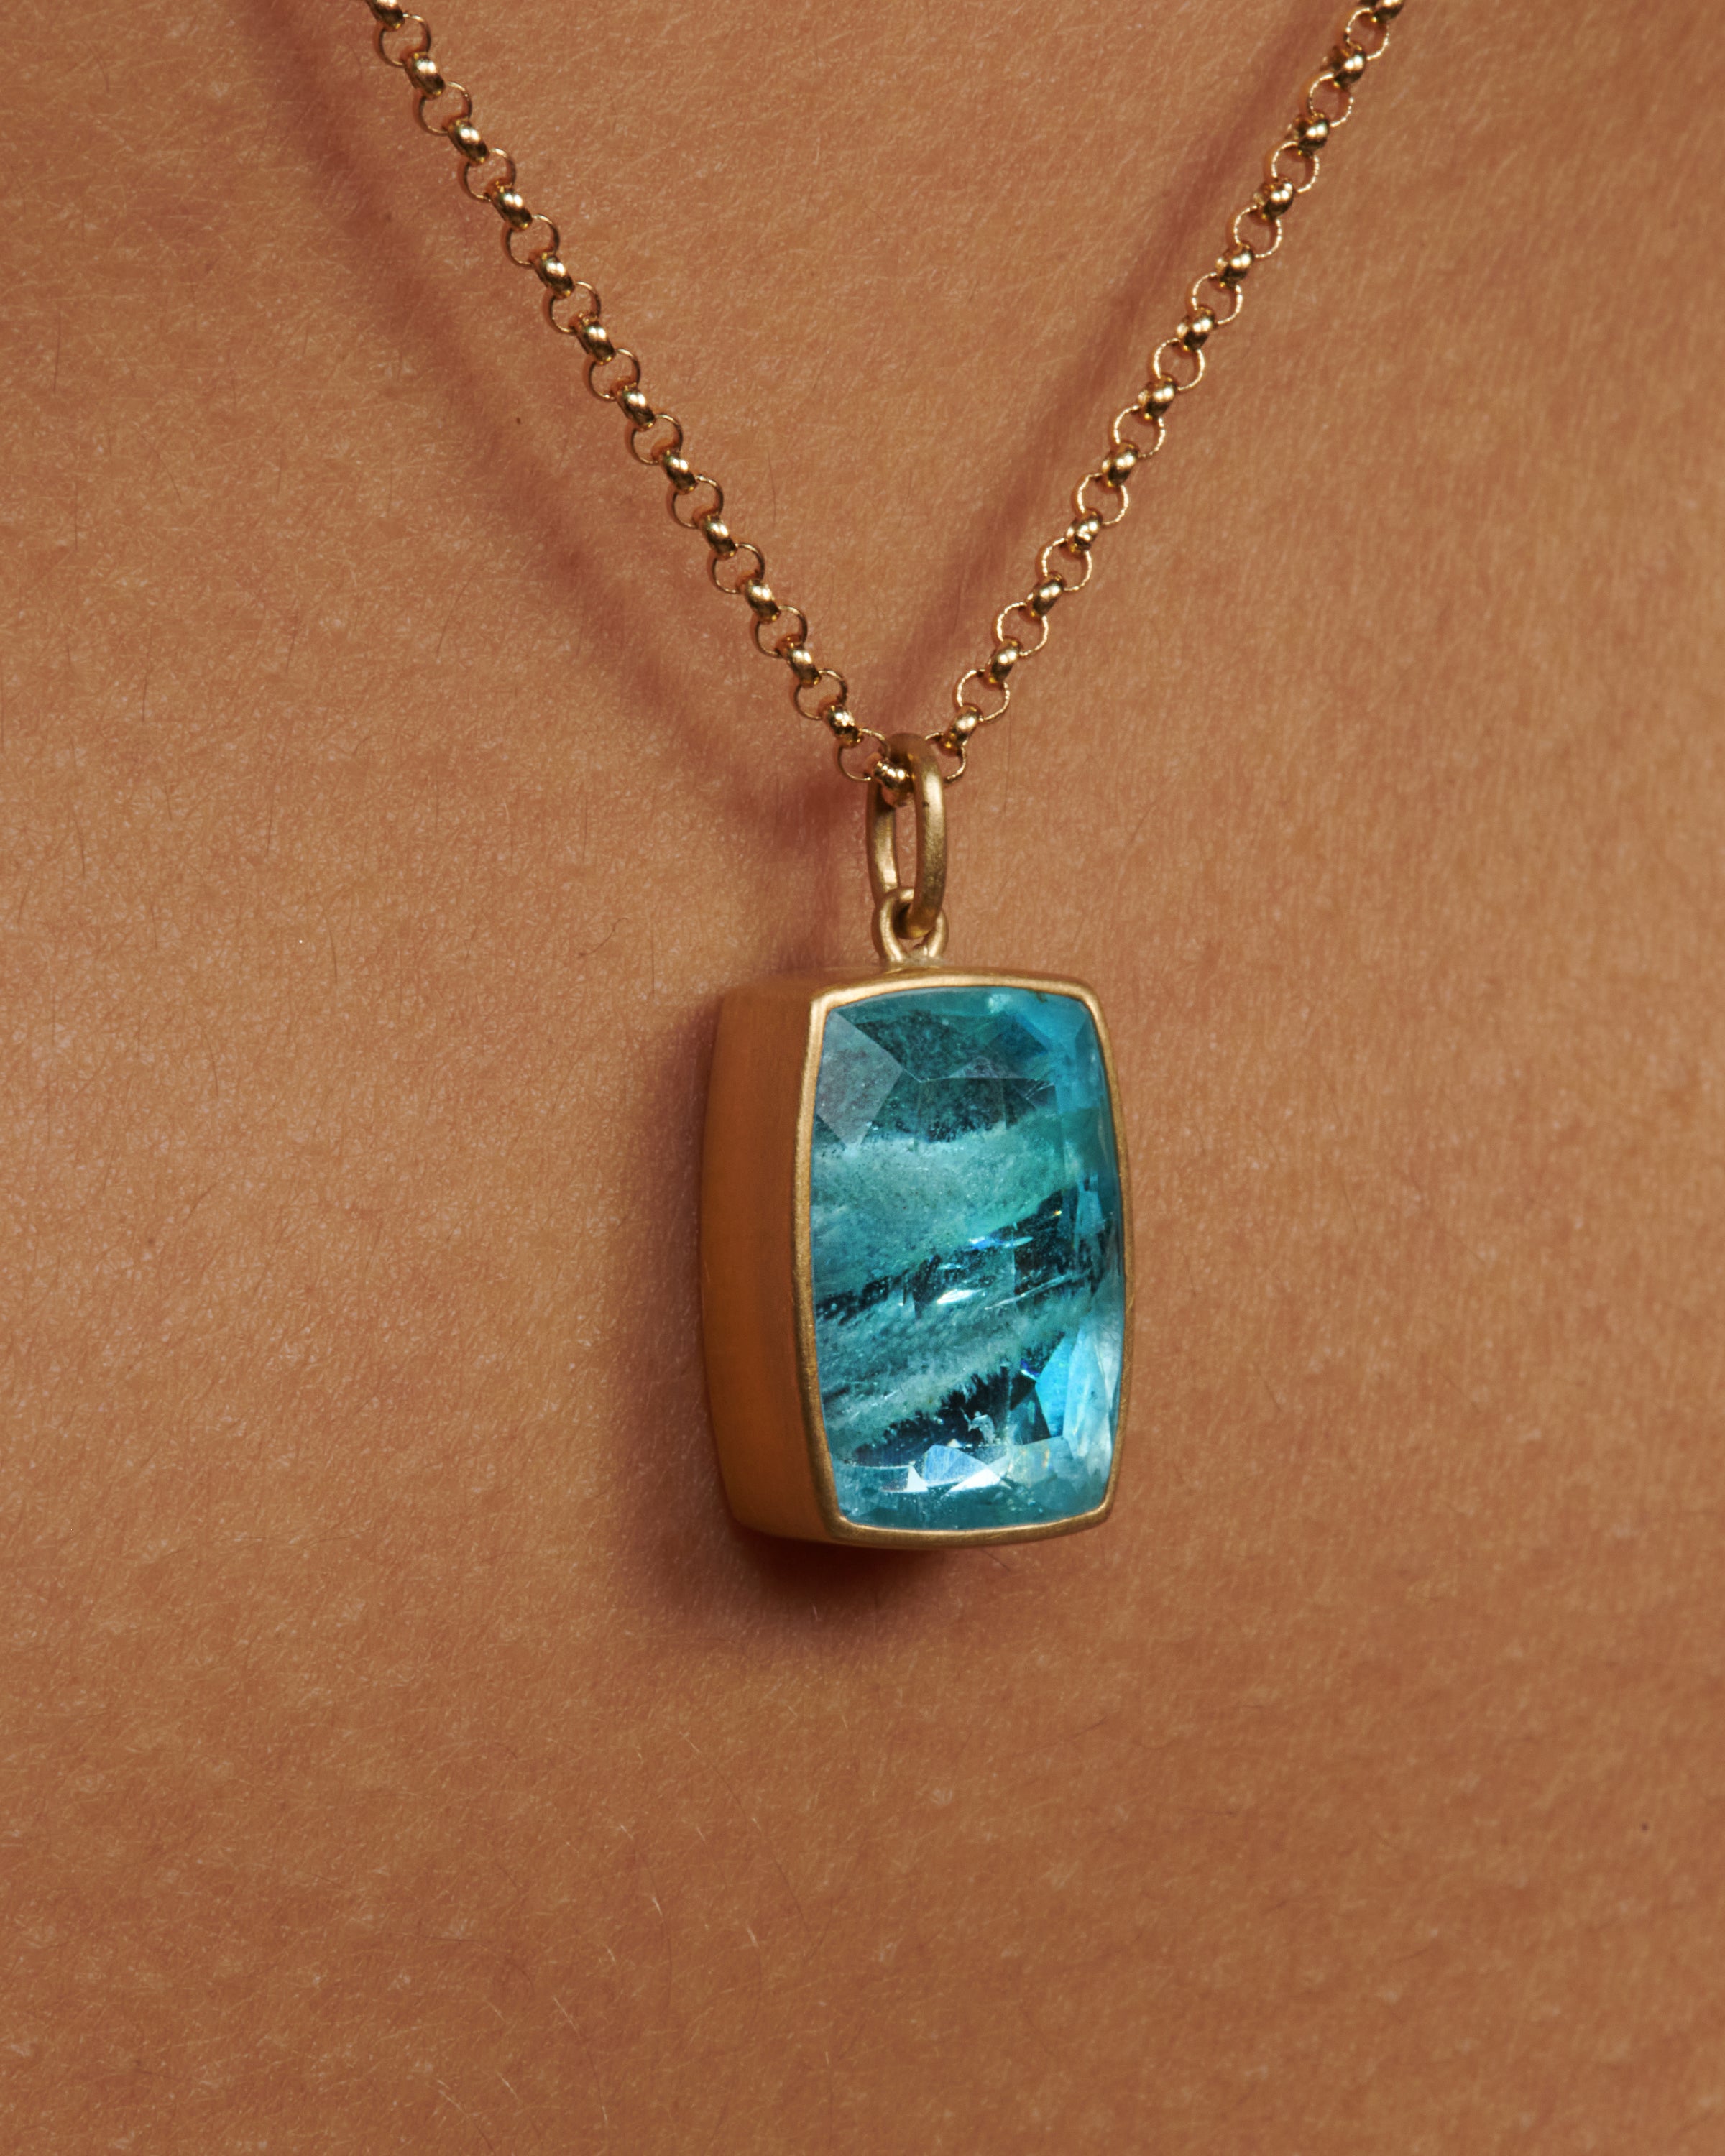 Antique Edwardian era aquamarine necklace